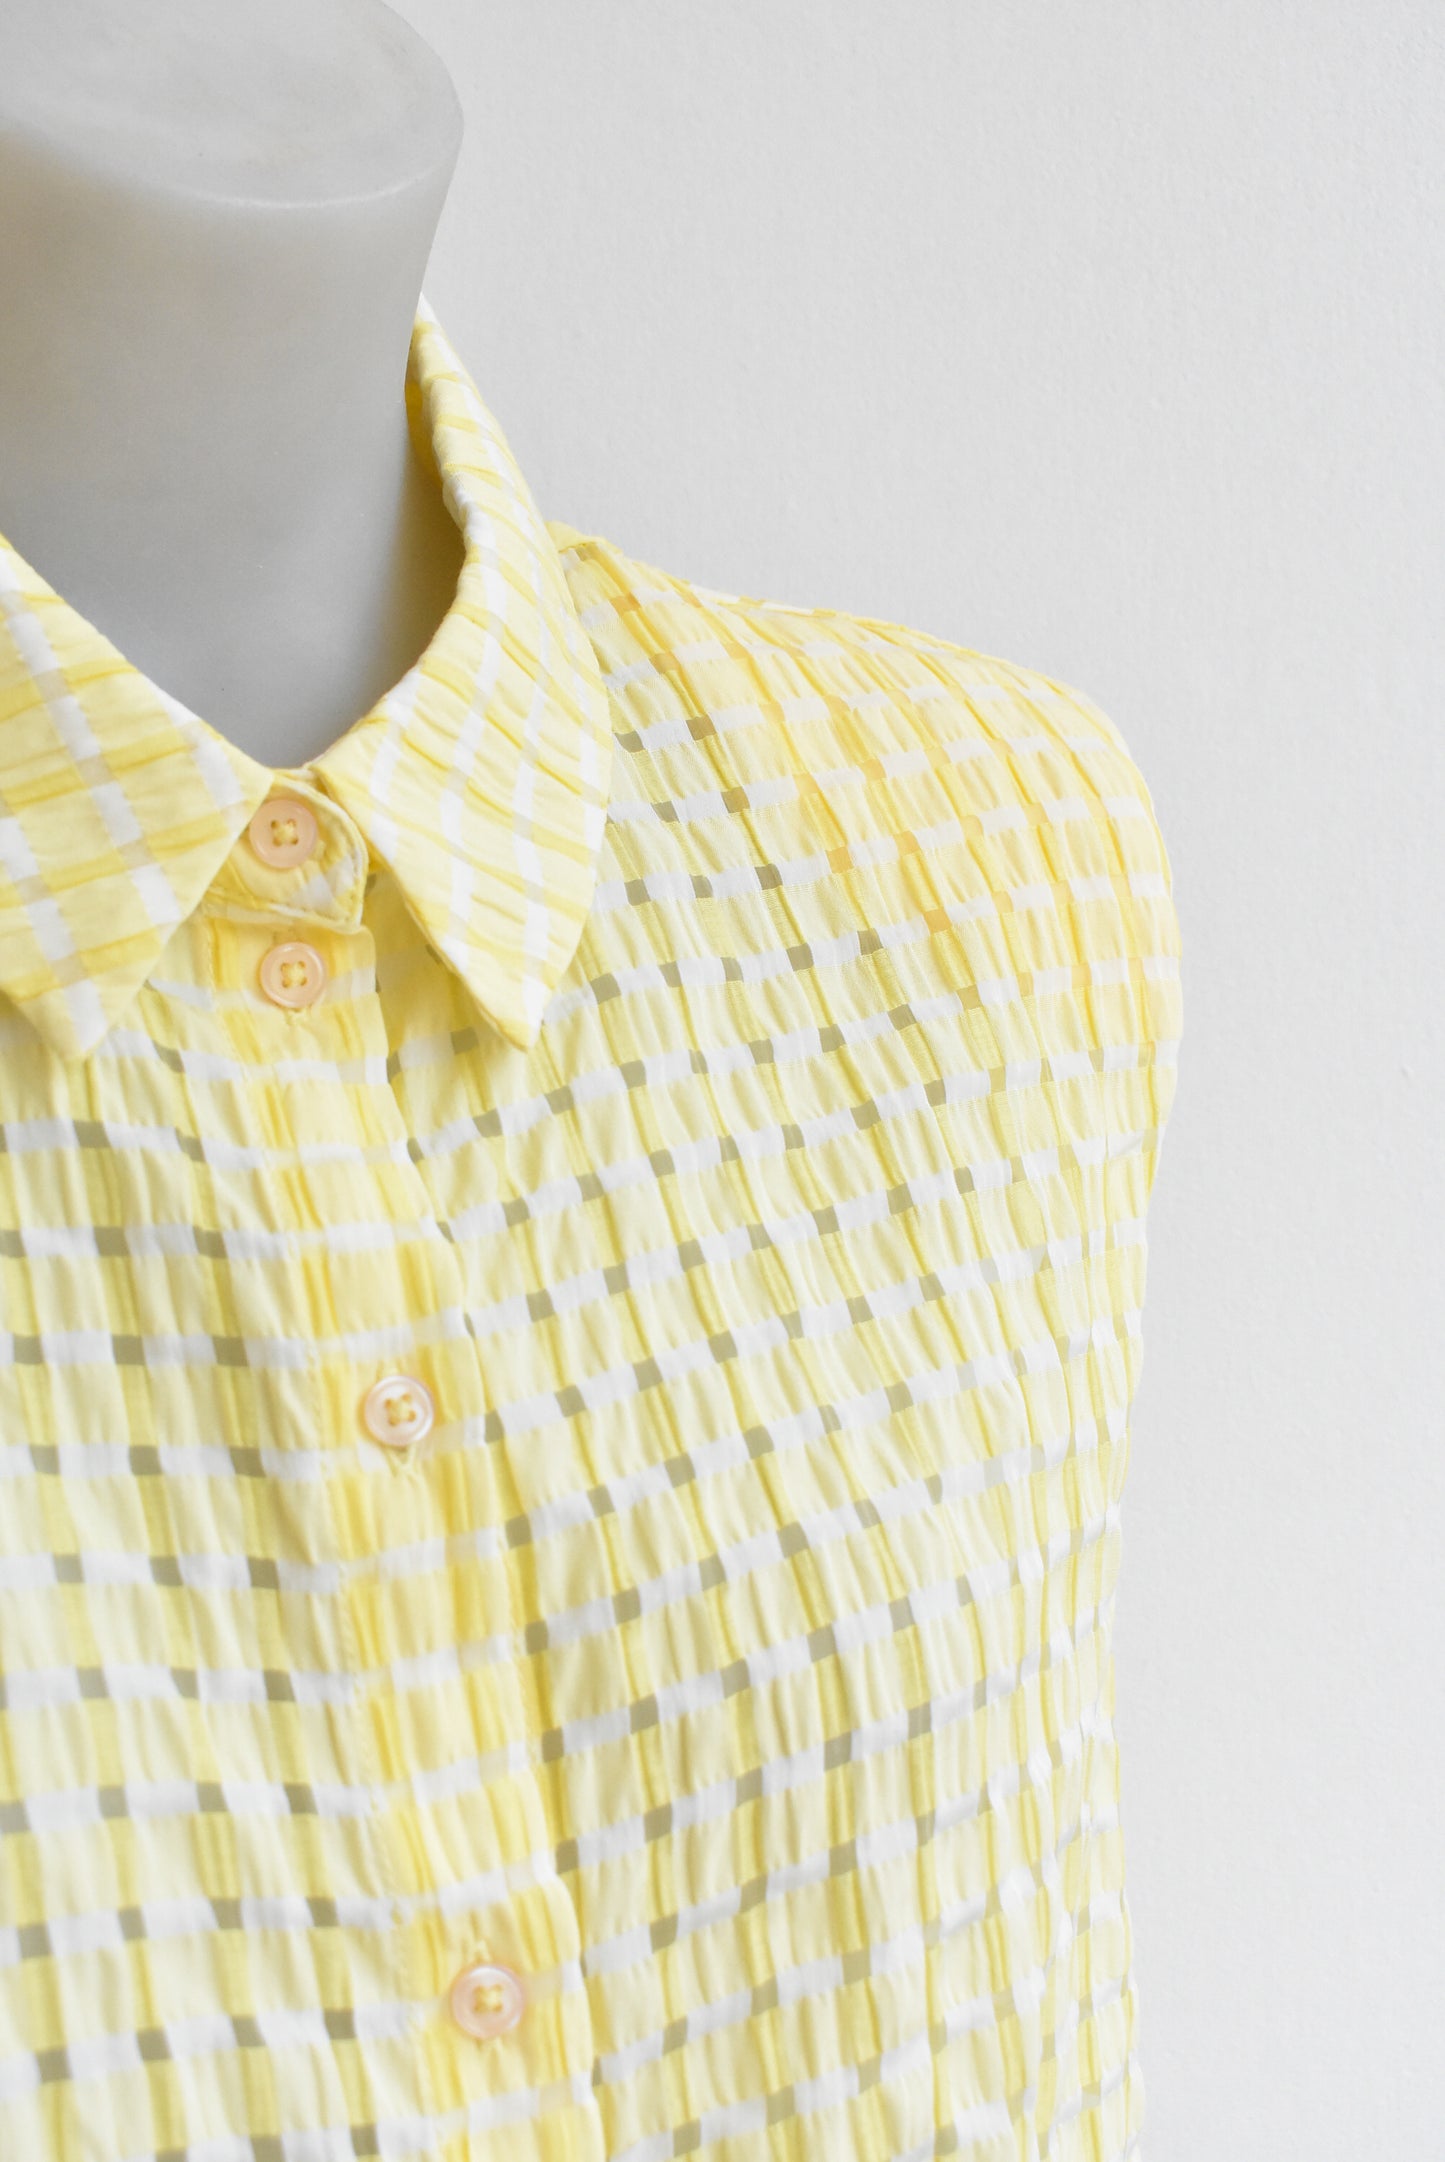 Vero Moda yellow checkered sleeveless shirt, size M